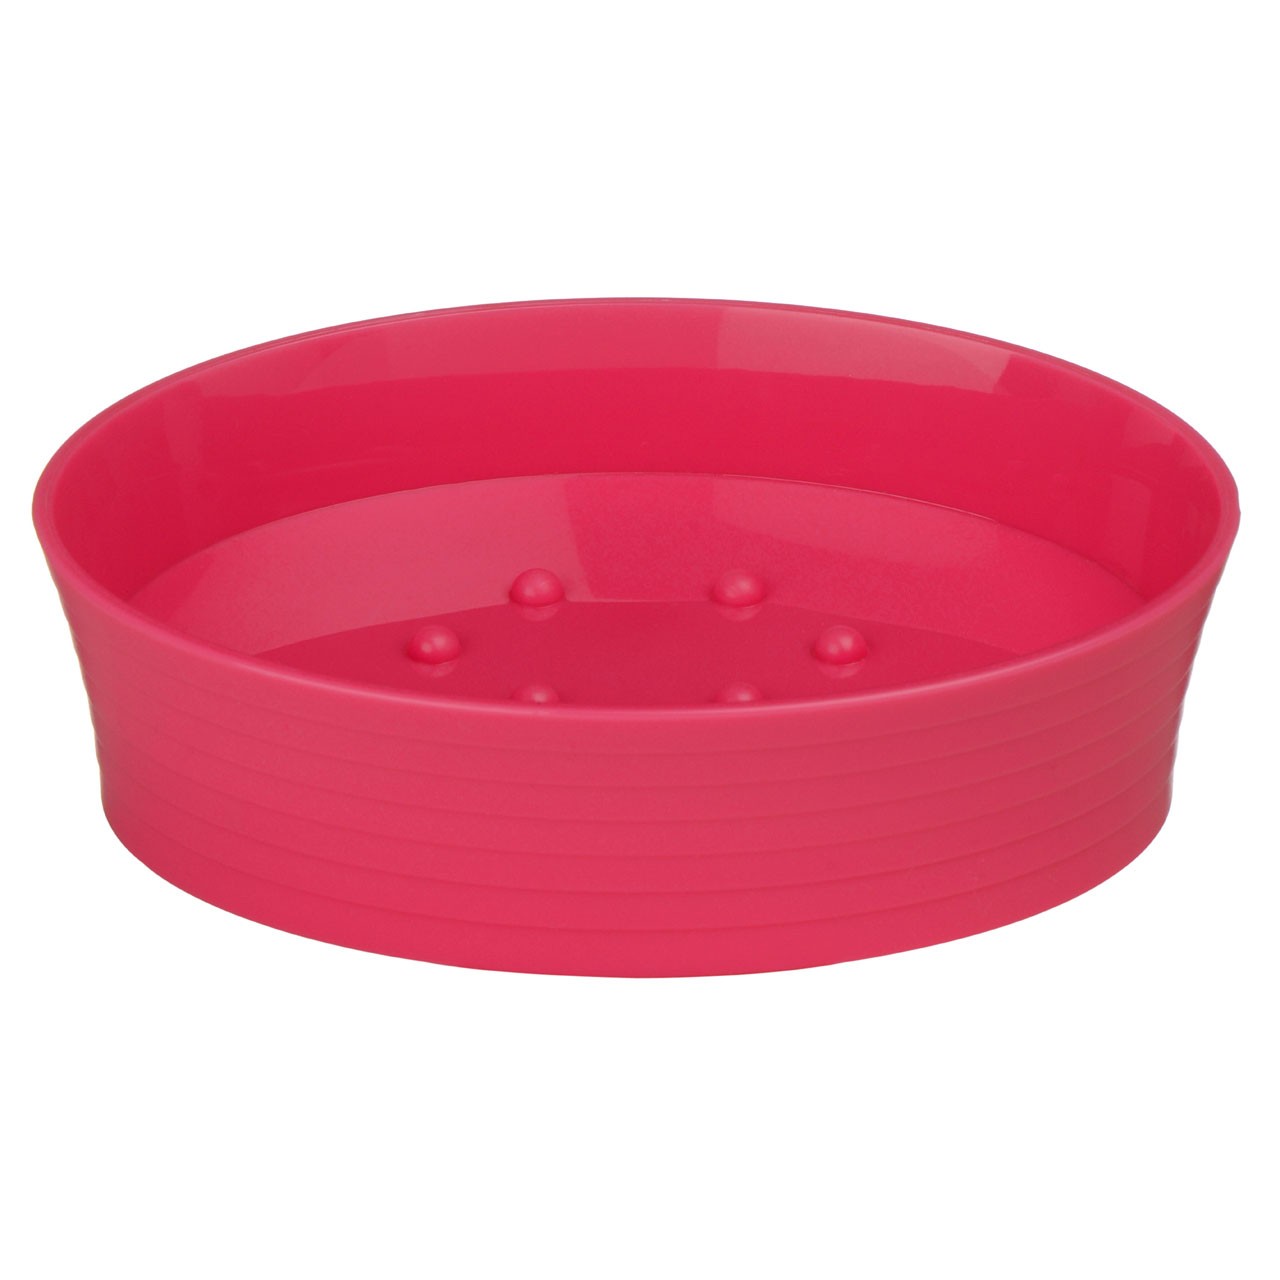 Soap Dish - Hot Pink